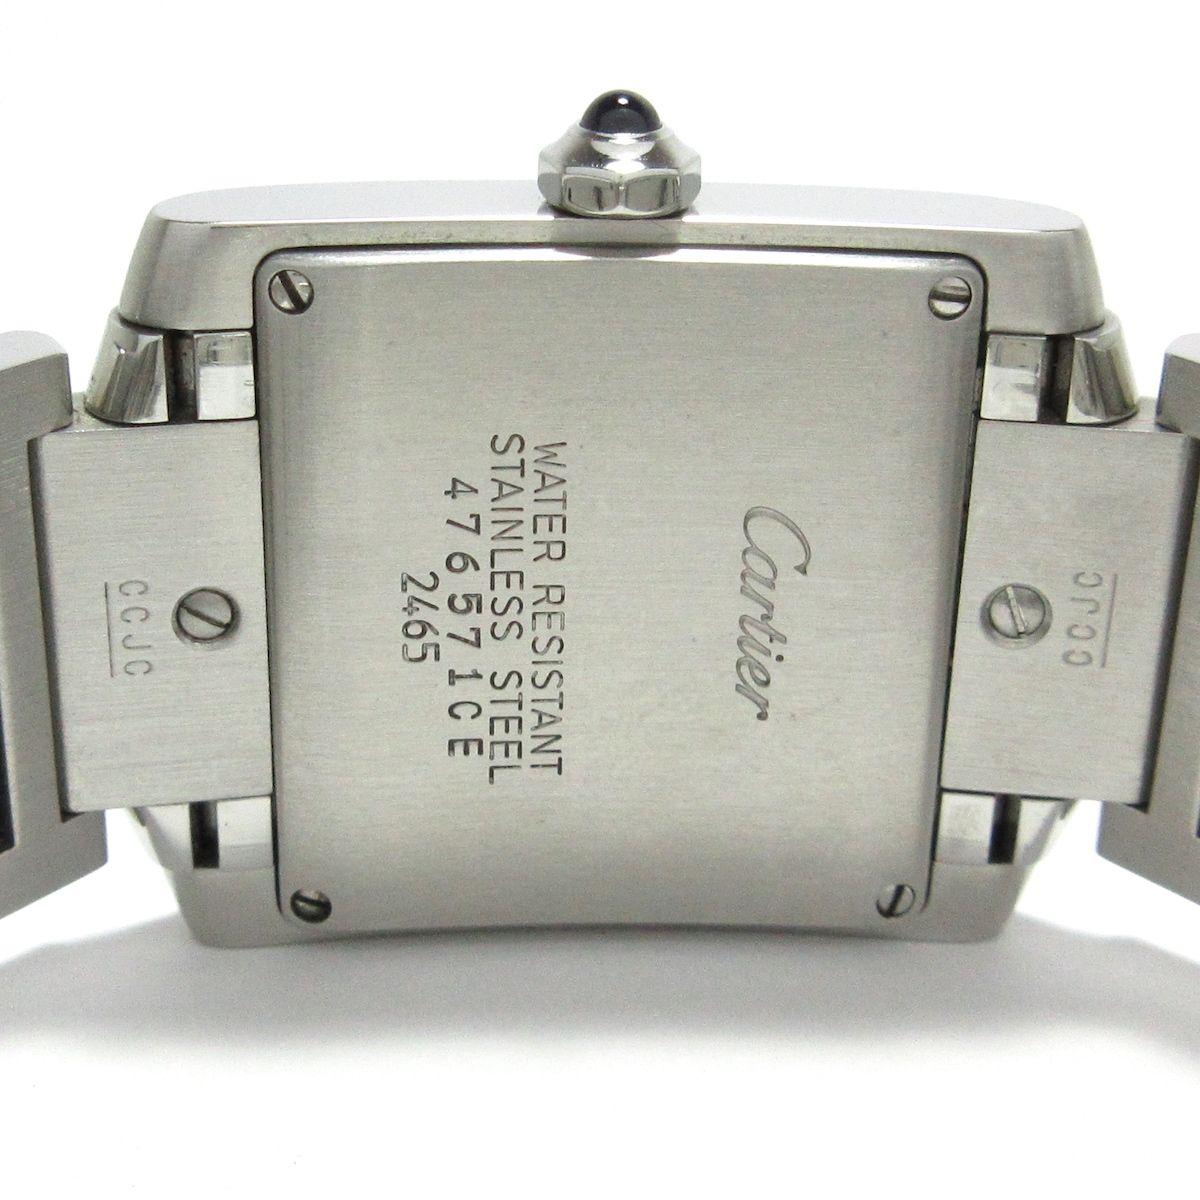 Cartier(カルティエ) 腕時計美品 タンクフランセーズMM W51011Q3 ボーイズ SS アイボリー